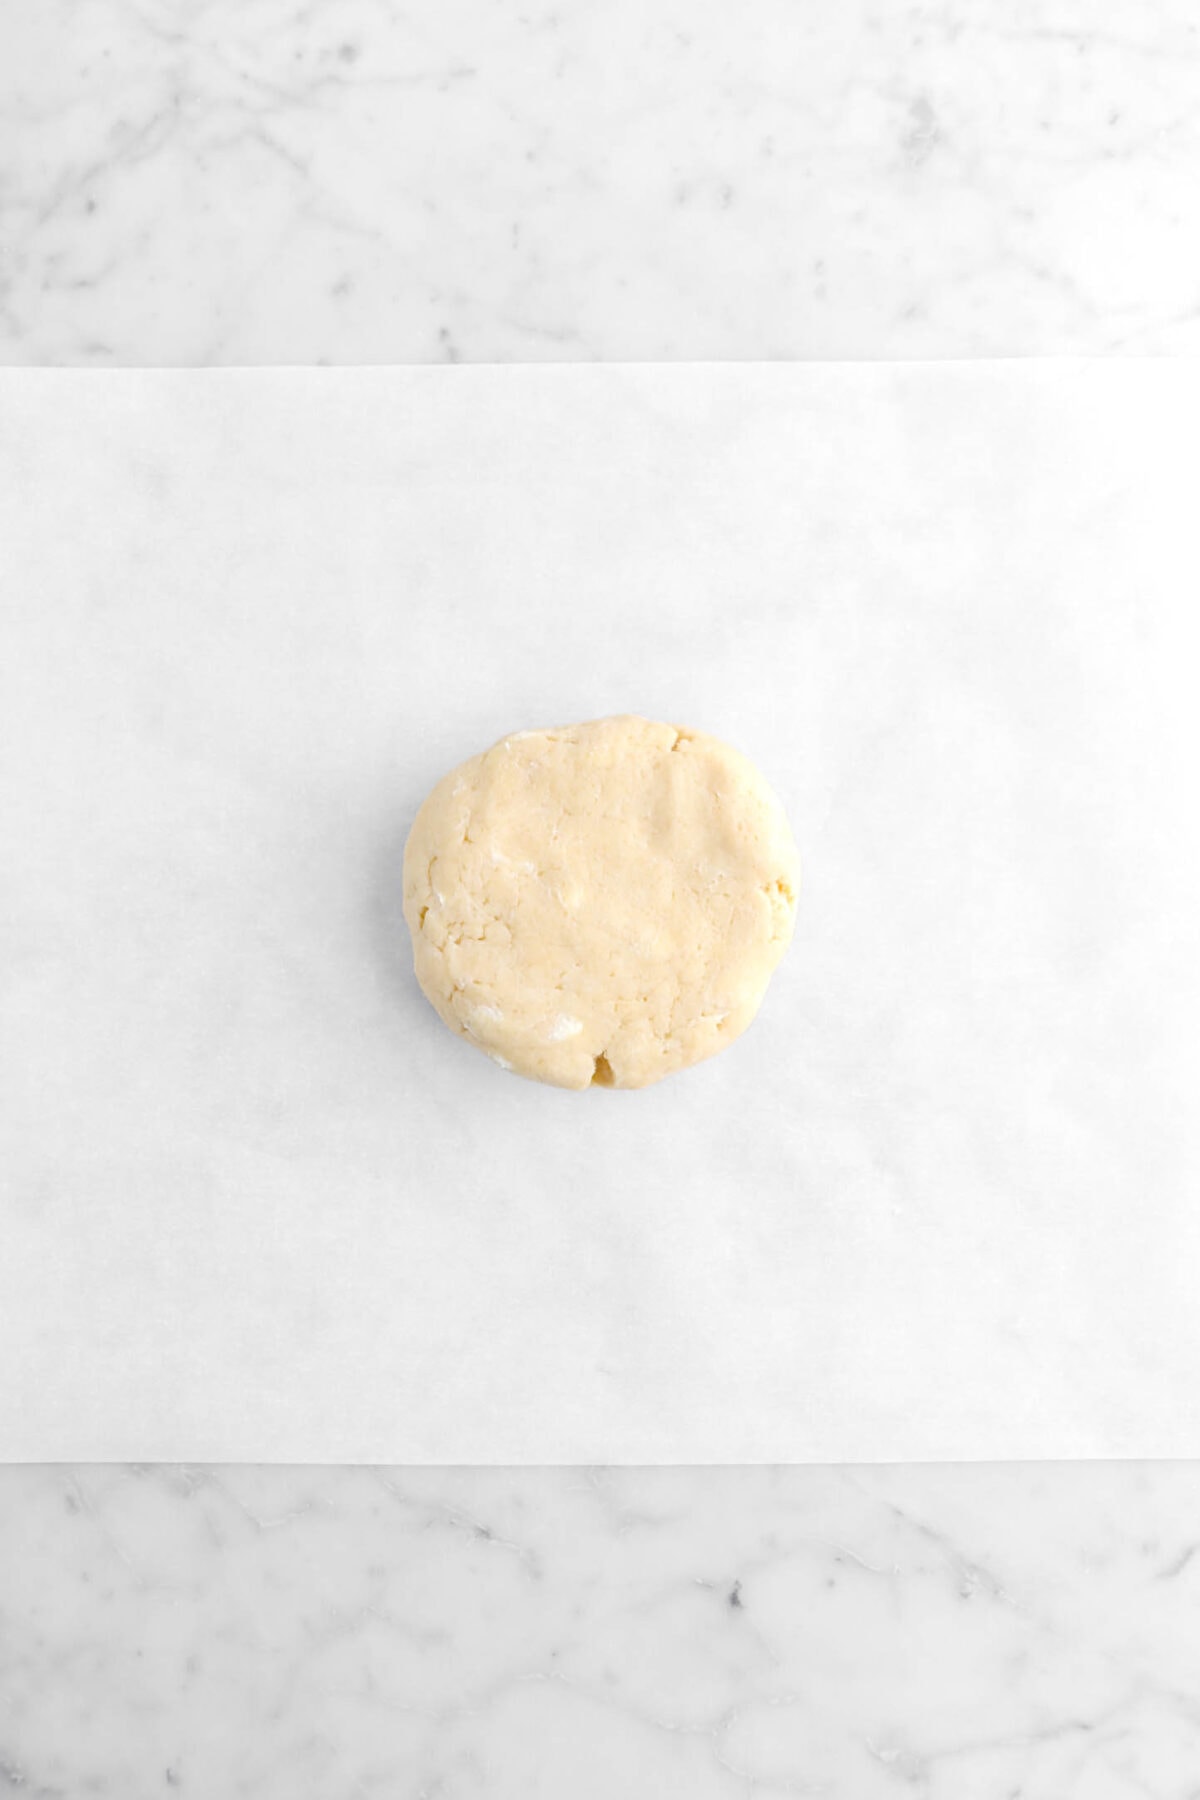 pie dough on parchment paper.